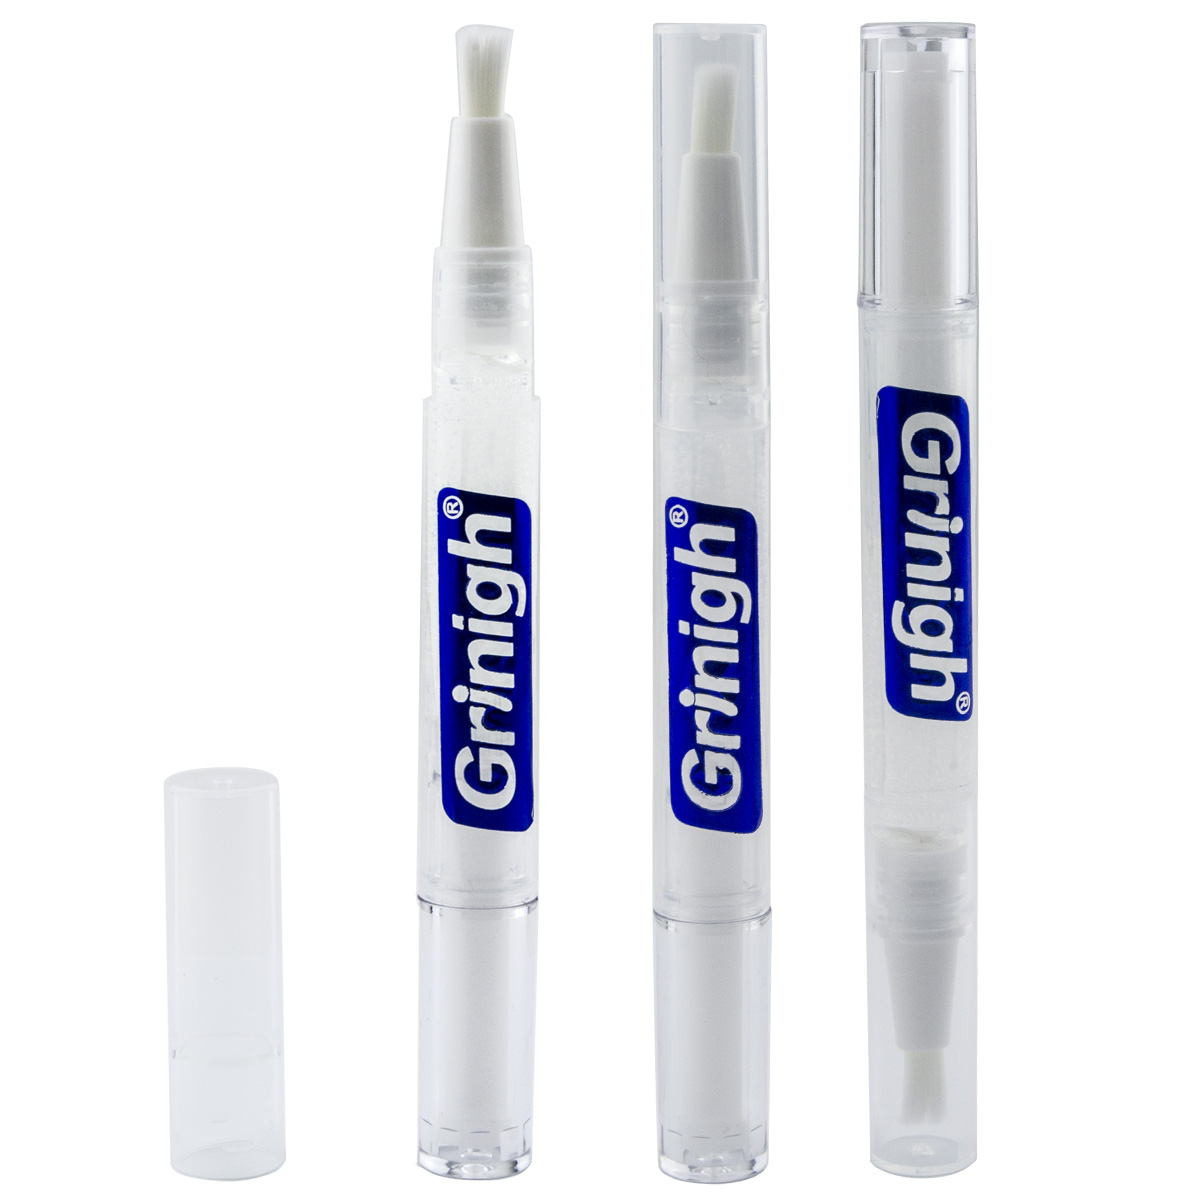 Grin365 tarkka valkoisten hampaiden valkaisuun soveltuva kynä luonnollisilla aineosilla - 3 Kreivi - Väkevä geeli (6% Vetyperoksidi)